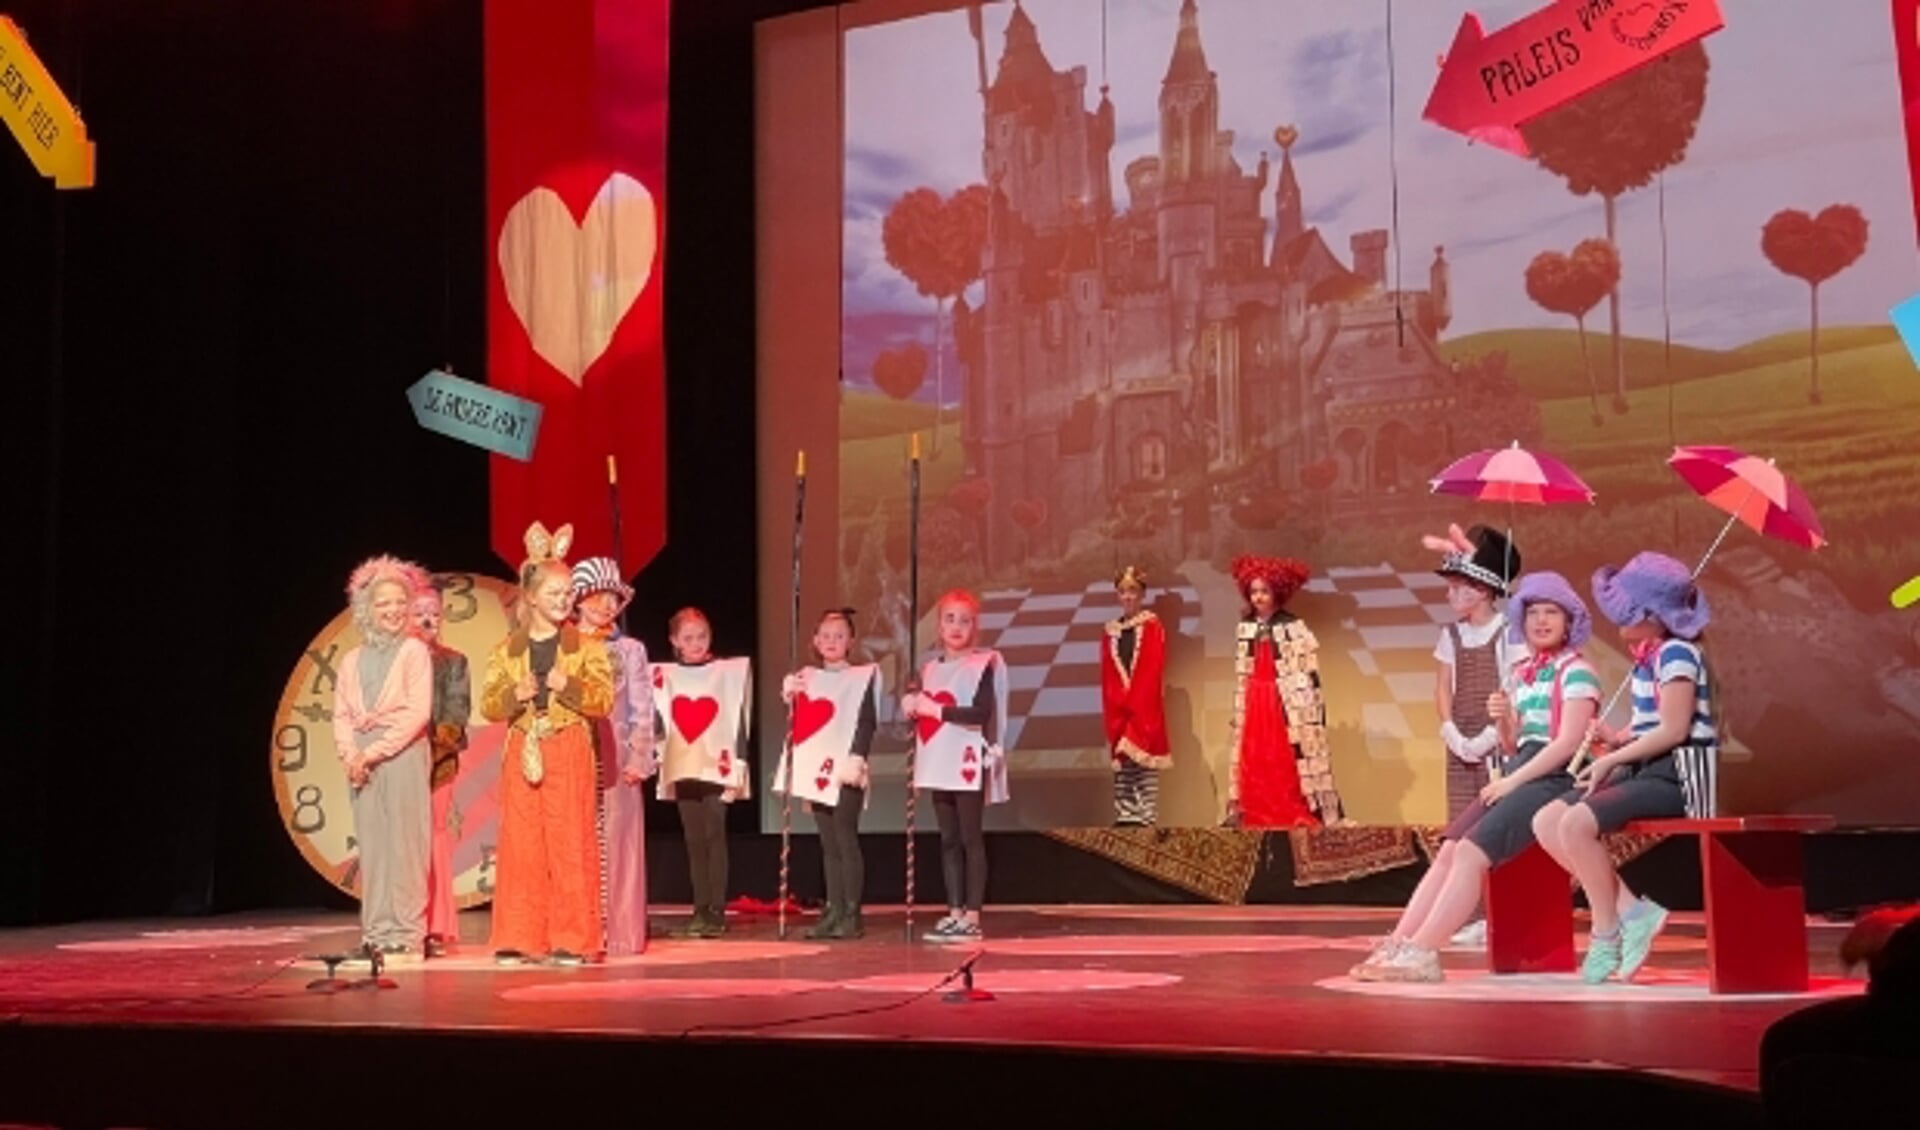 De theaterleerlingen van Theaterschool Masquerade van het KunstenHuis tijdens de opnames van hun voorstelling Alice in Wonderland.